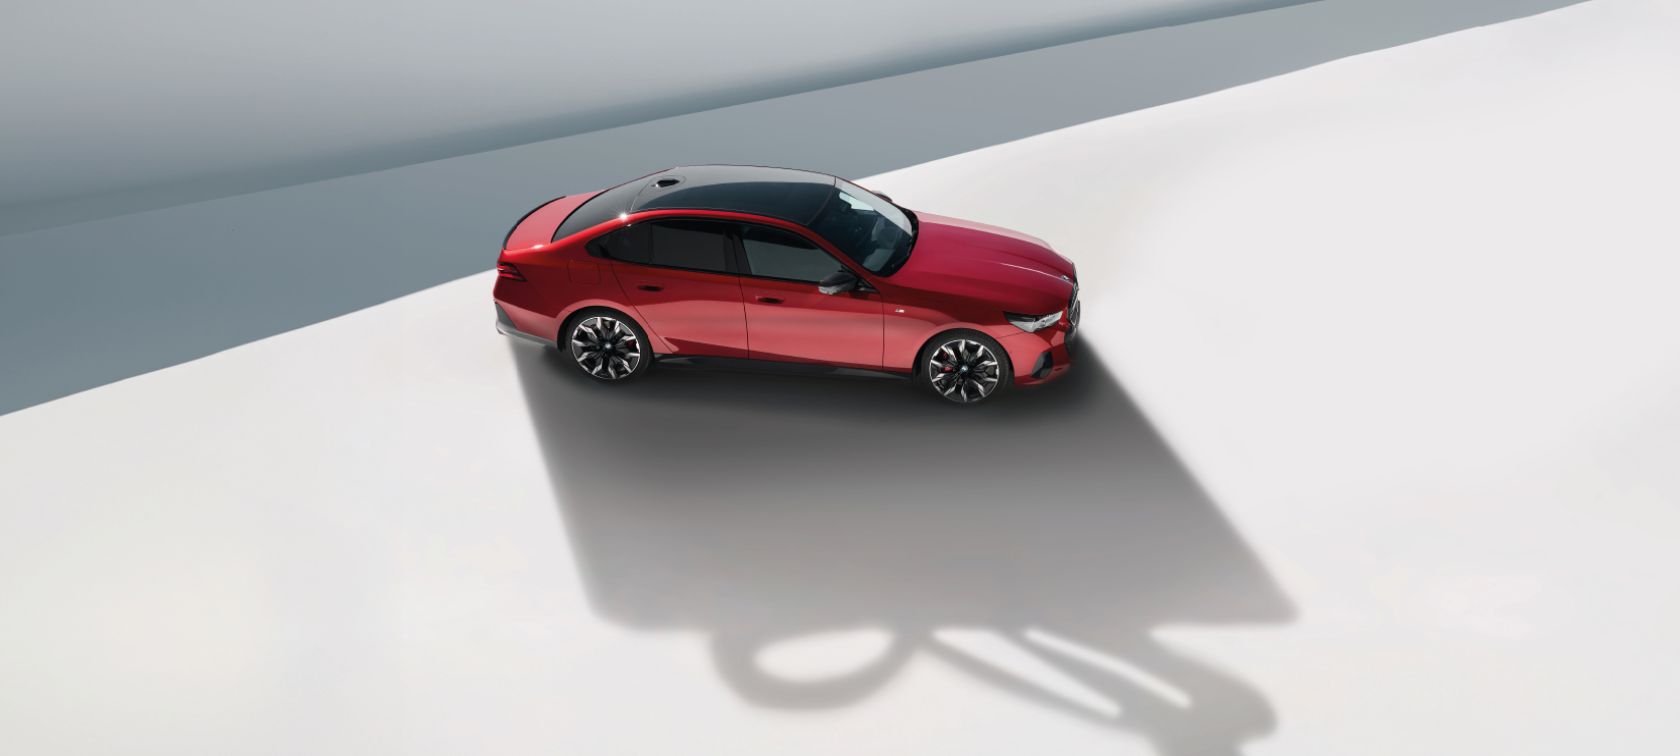 Nowe BMW dostępne od ręki z niespodzianką w bagażniku. Wybierz swój wymarzony samochód i zyskaj komplet kół zimowych za połowę ceny.